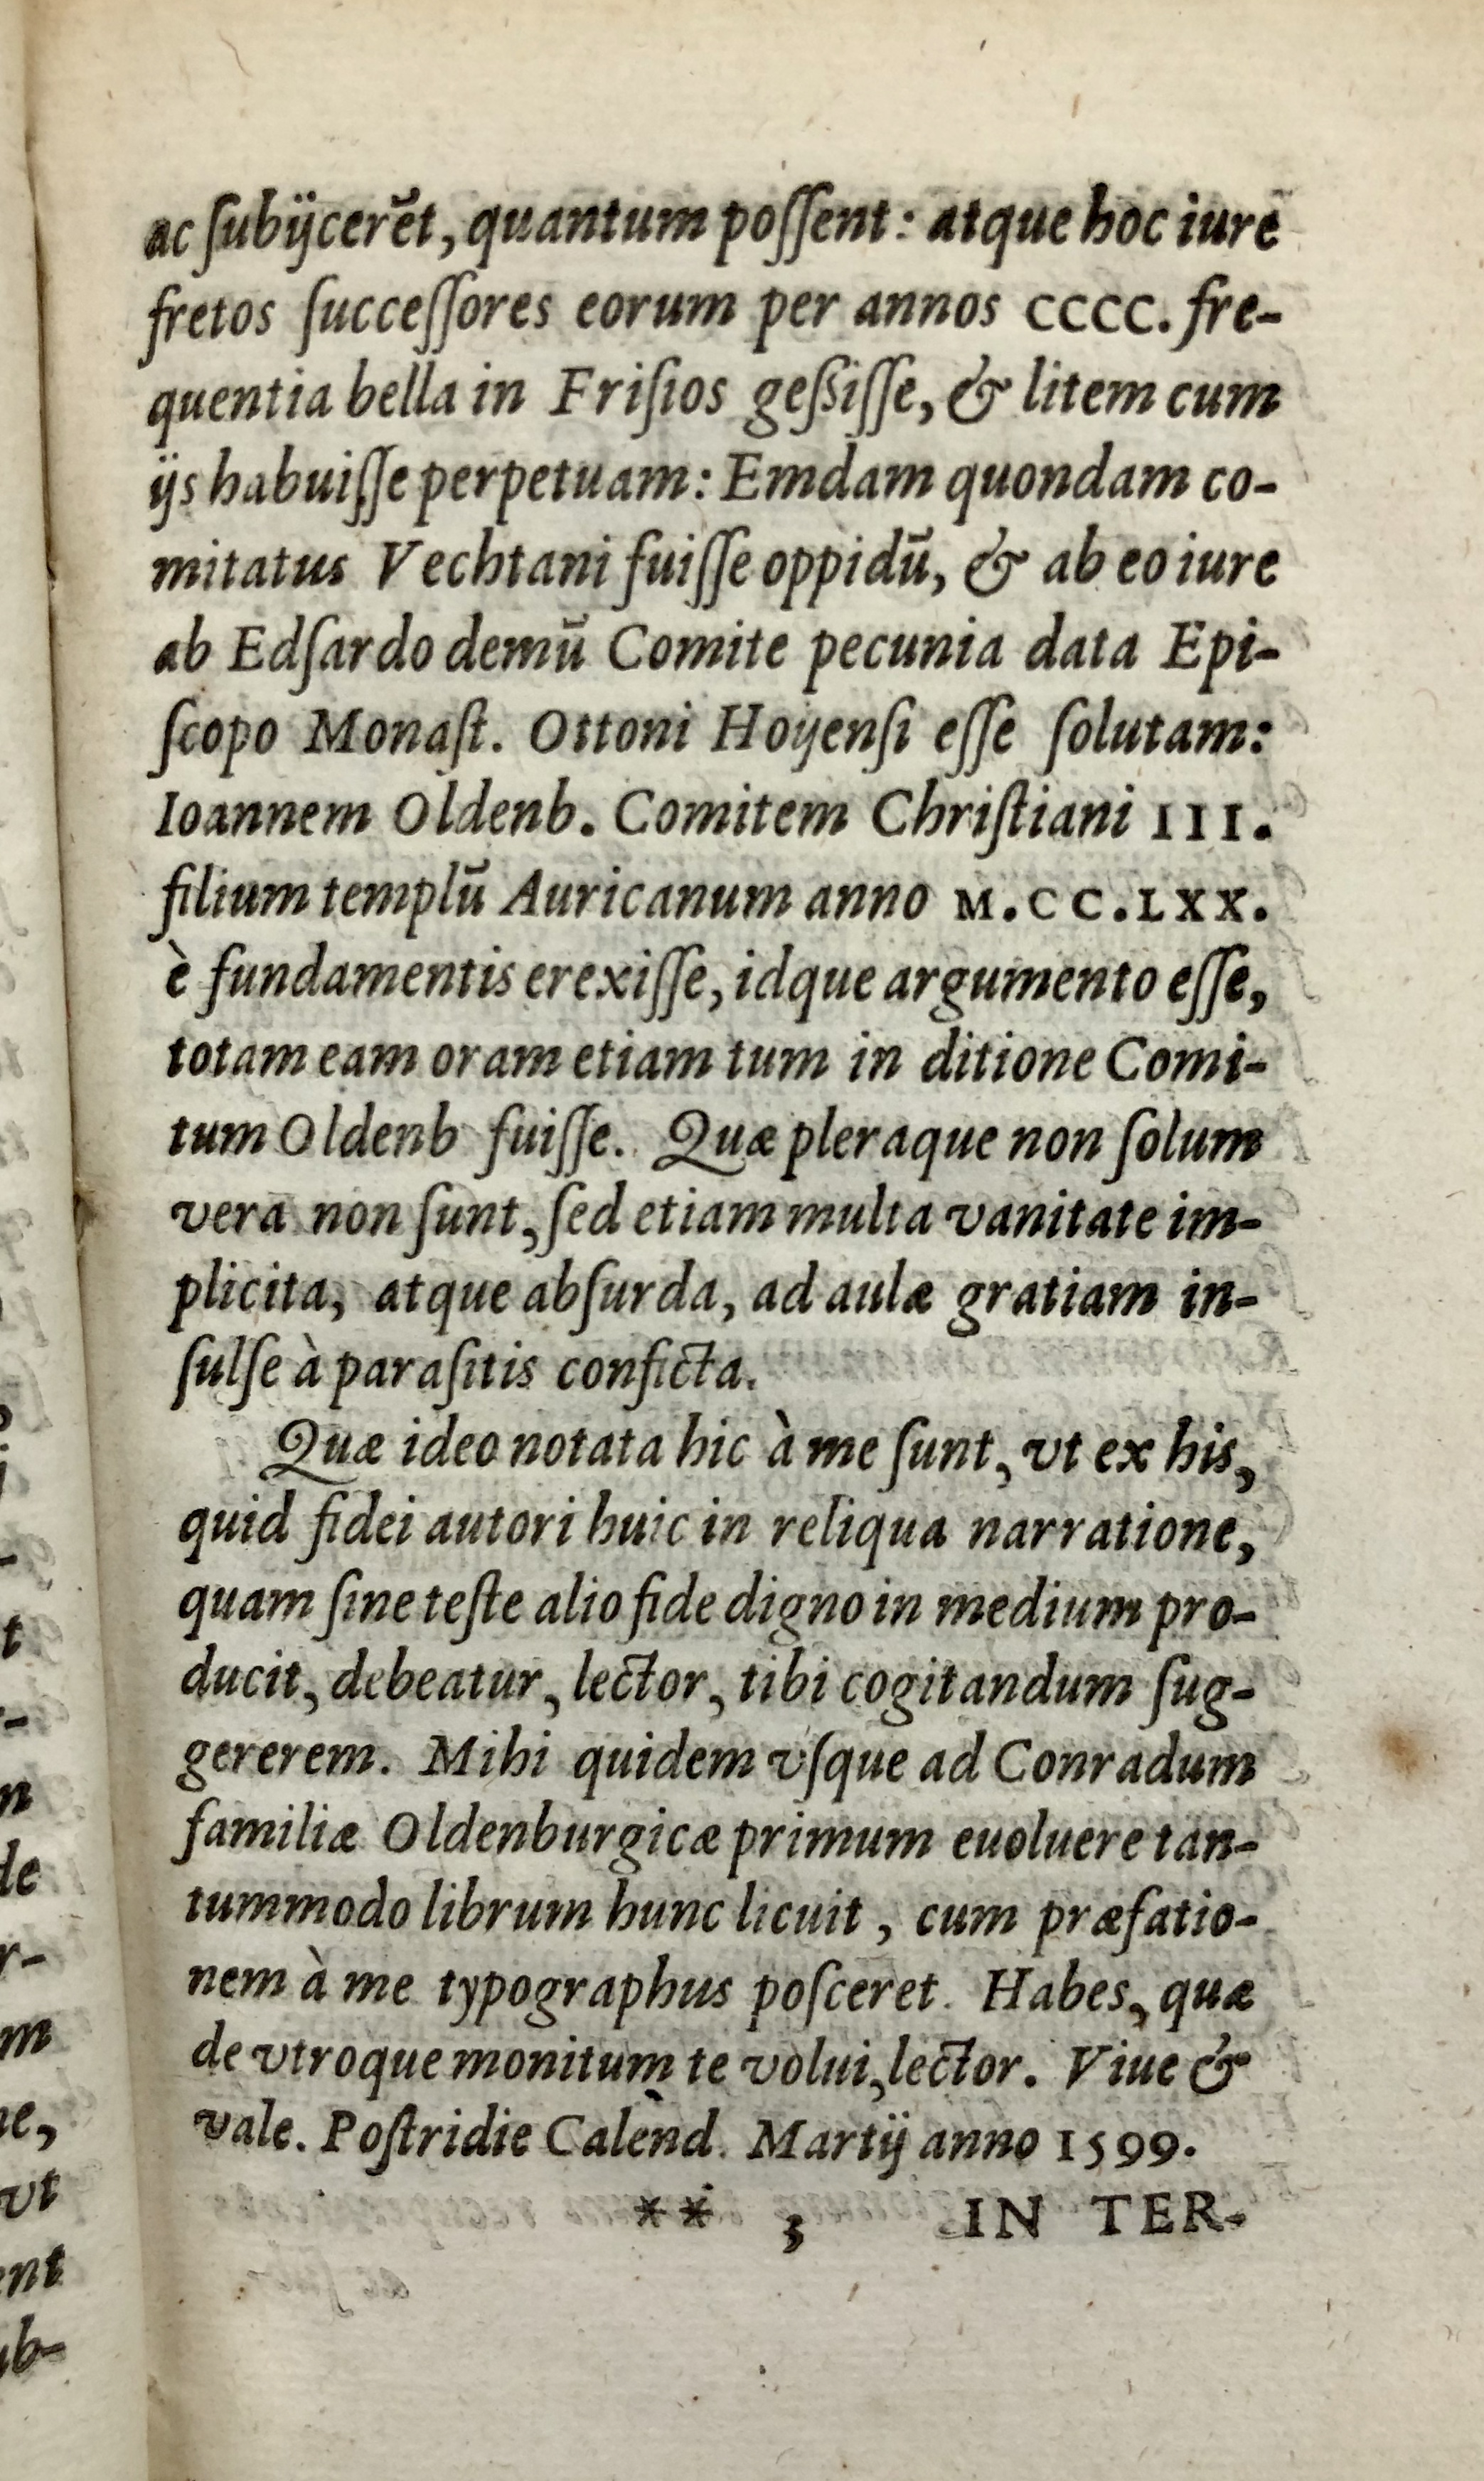 4. Ubbo Emmius, Rerum Frisicarum historia (Leiden 1599), fol. **3r04. Ubbo Emmius, Rerum Frisicarum historia (Leiden 1599), fol. **3r04. Ubbo Emmius, Rerum Frisicarum historia (Leiden 1599), fol. **3r